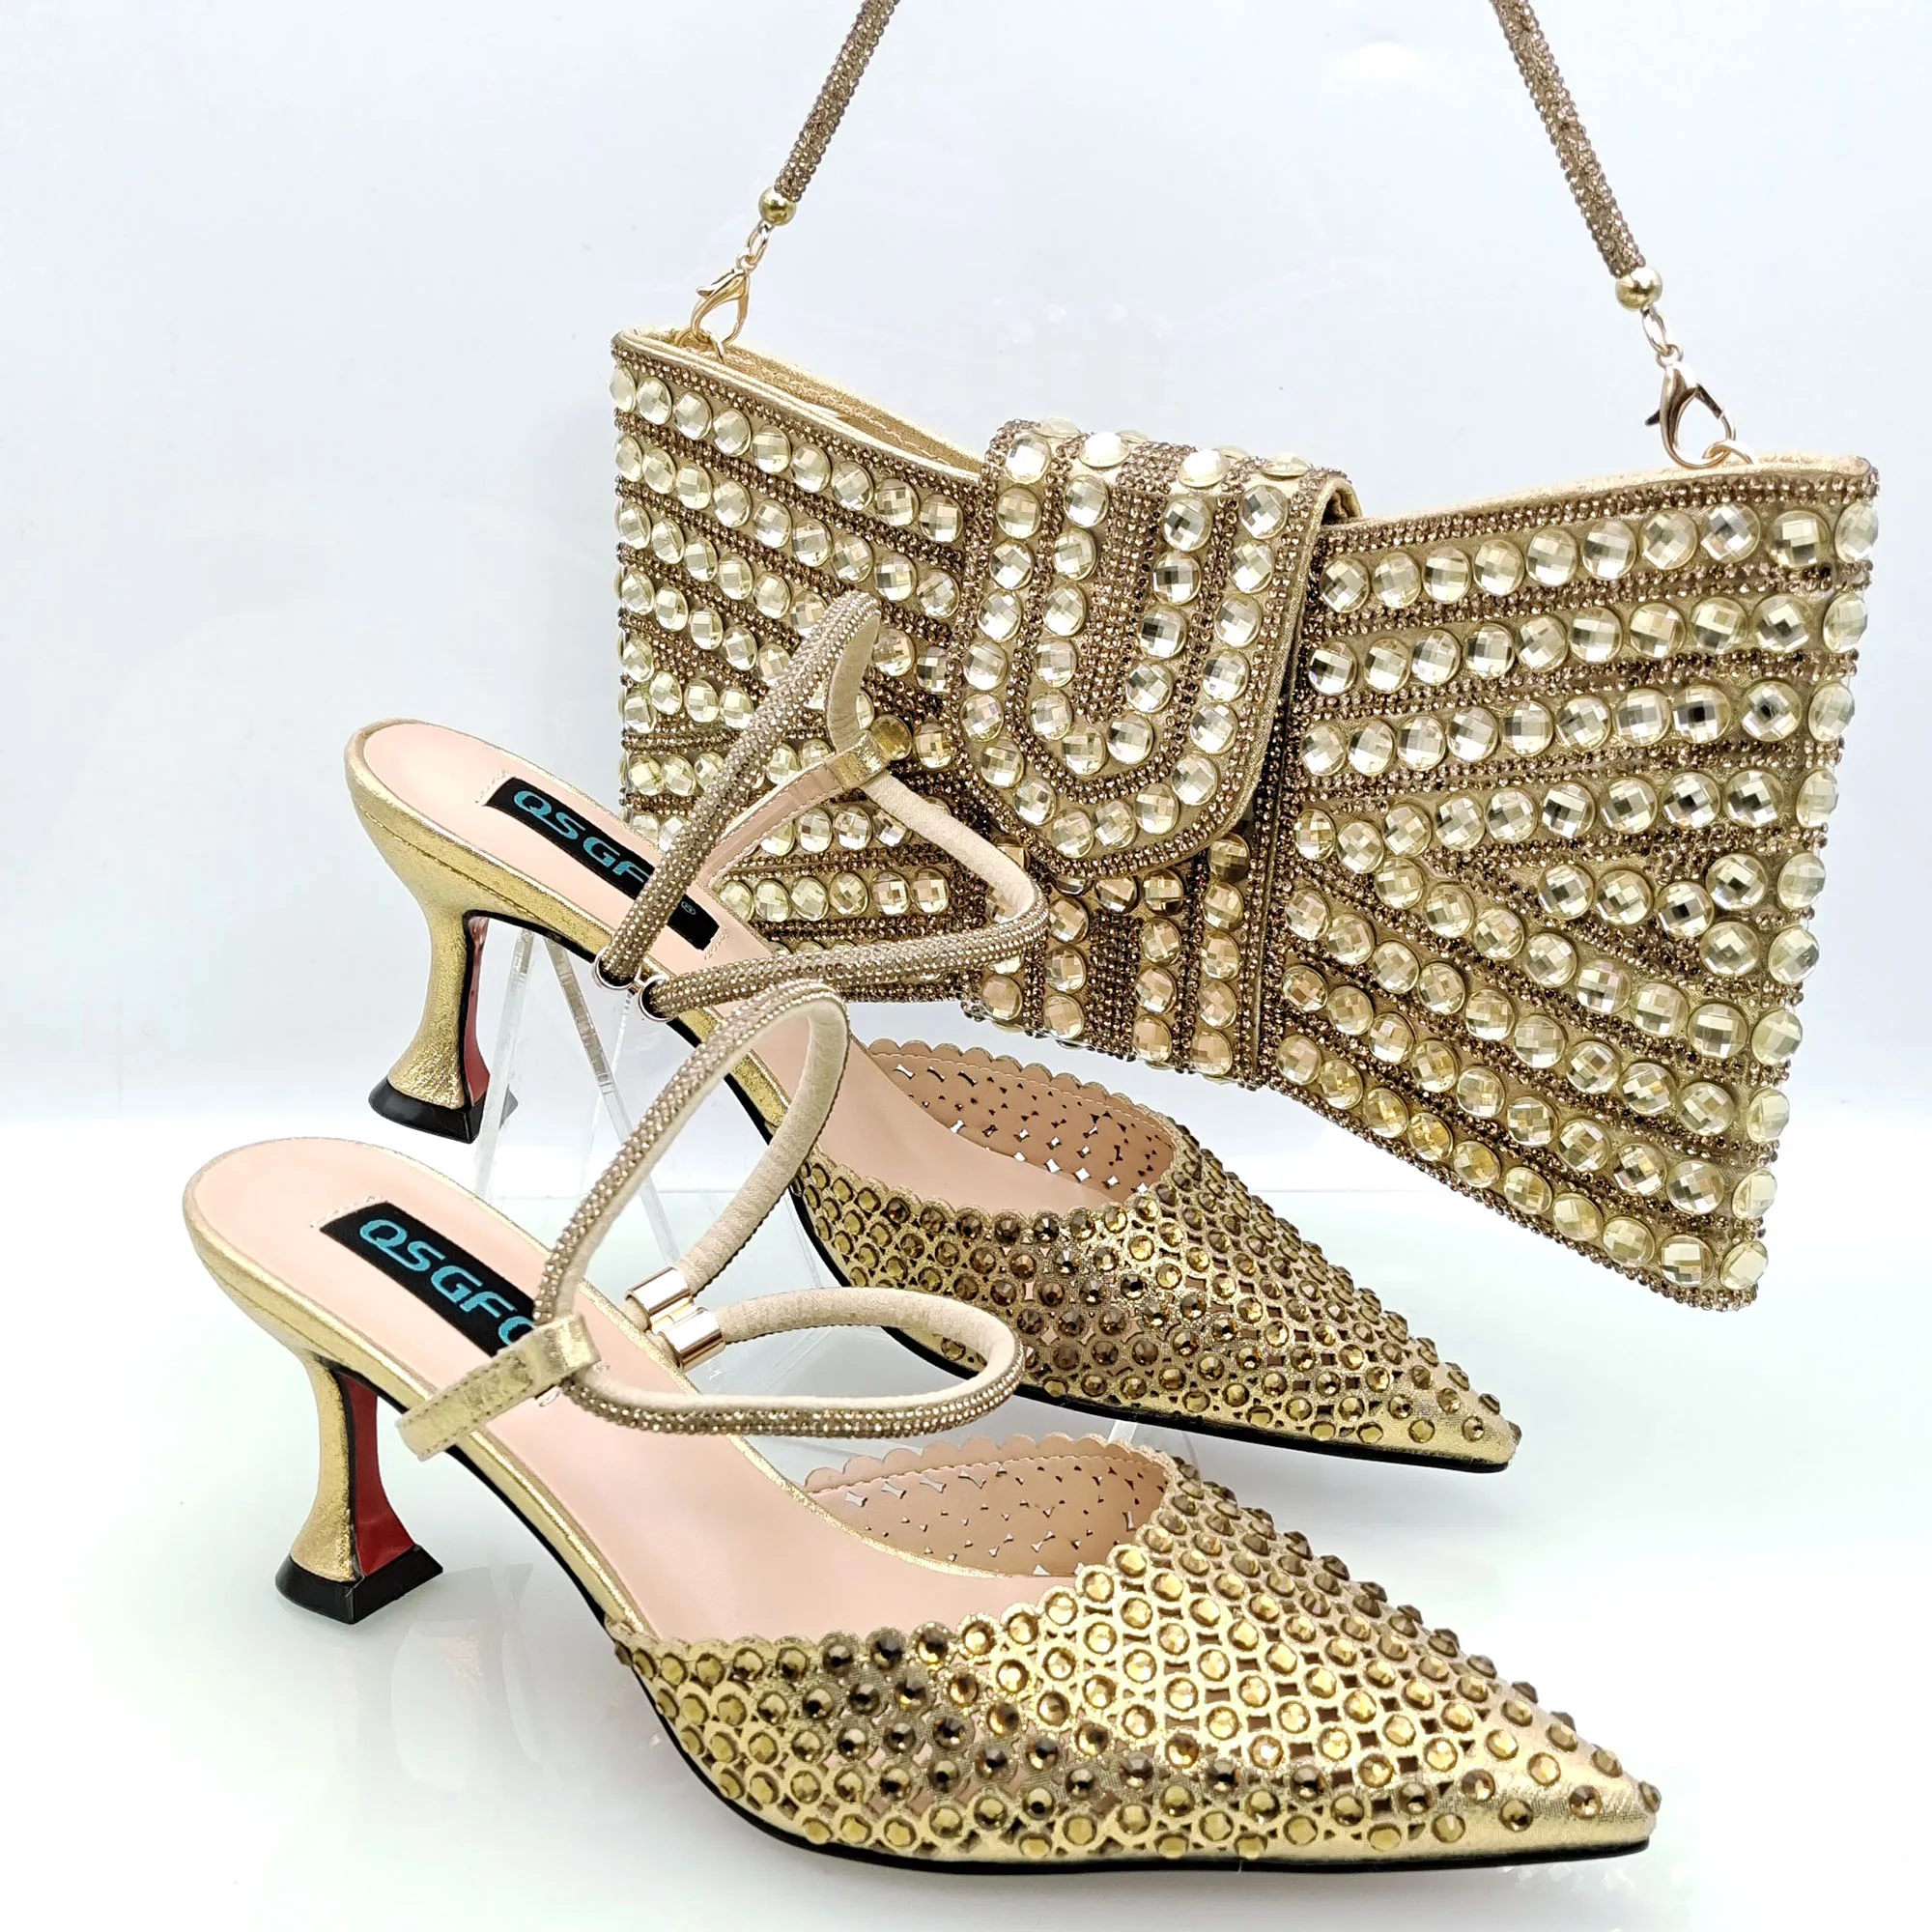 

Новейшая Обувь для вечеринки Cinessd, Дамская обувь и сумка, дизайн в виде бабочки с бриллиантами золотого цвета